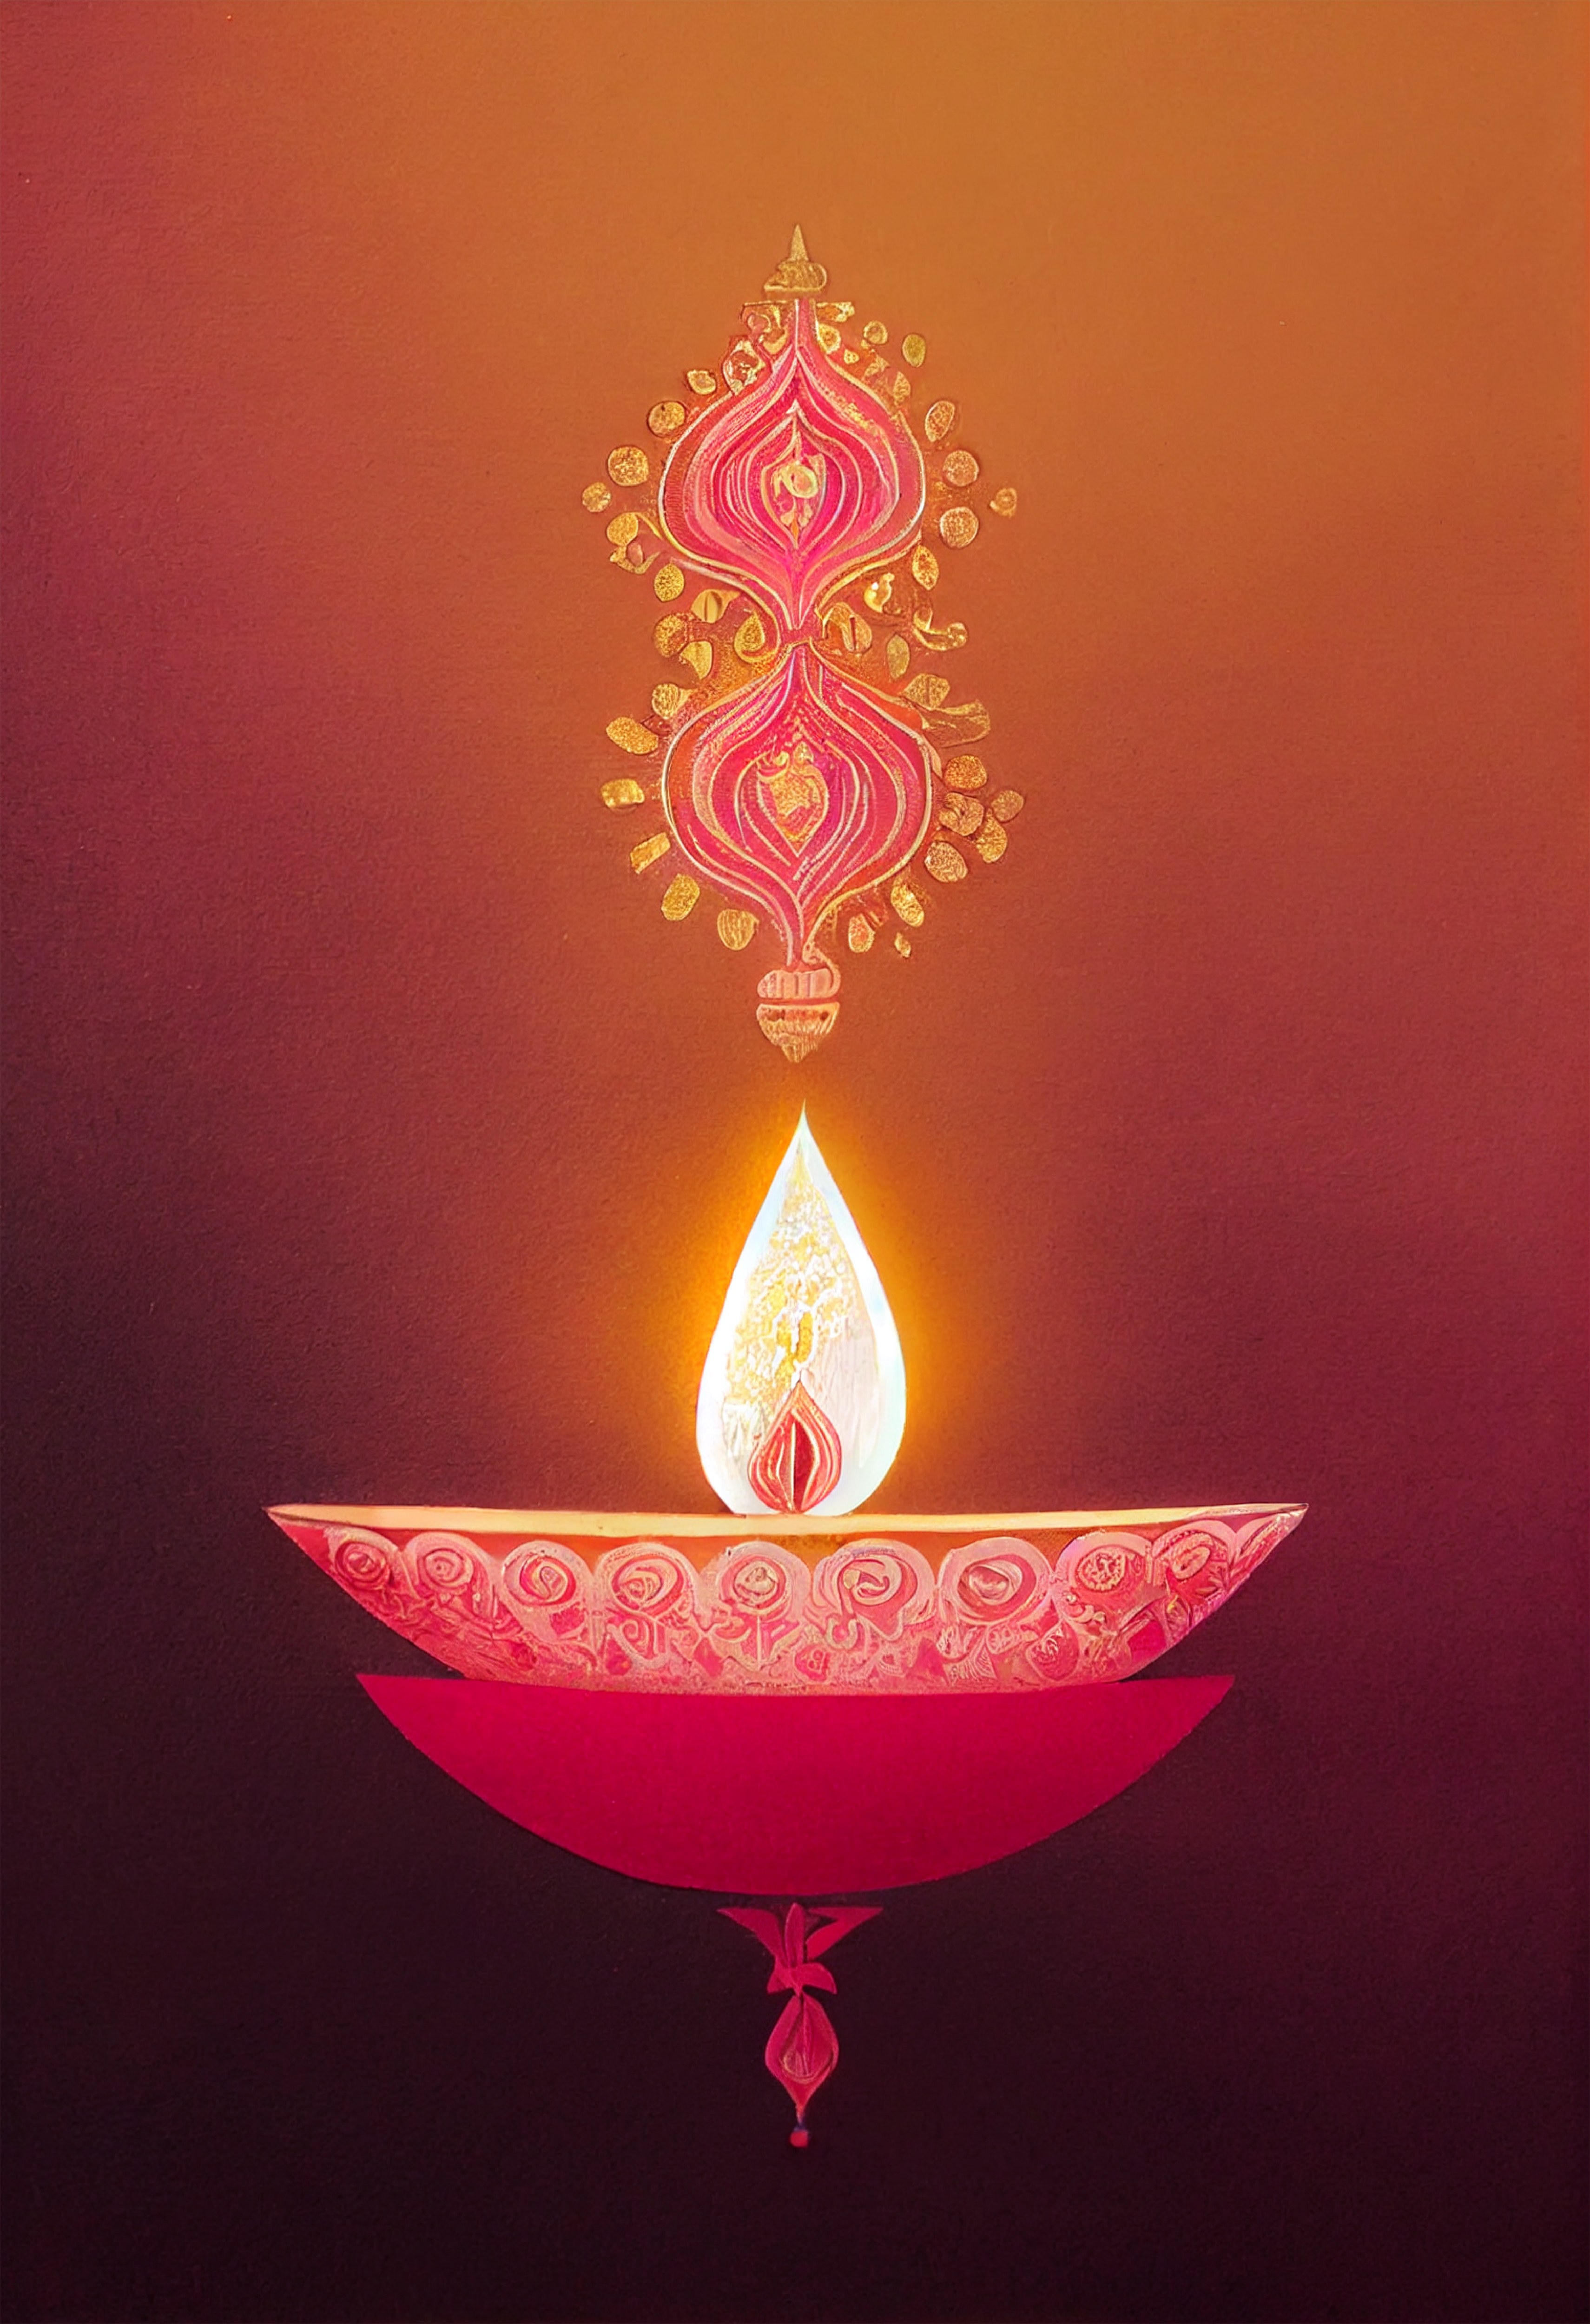 Free Diwali Diya Poster Image